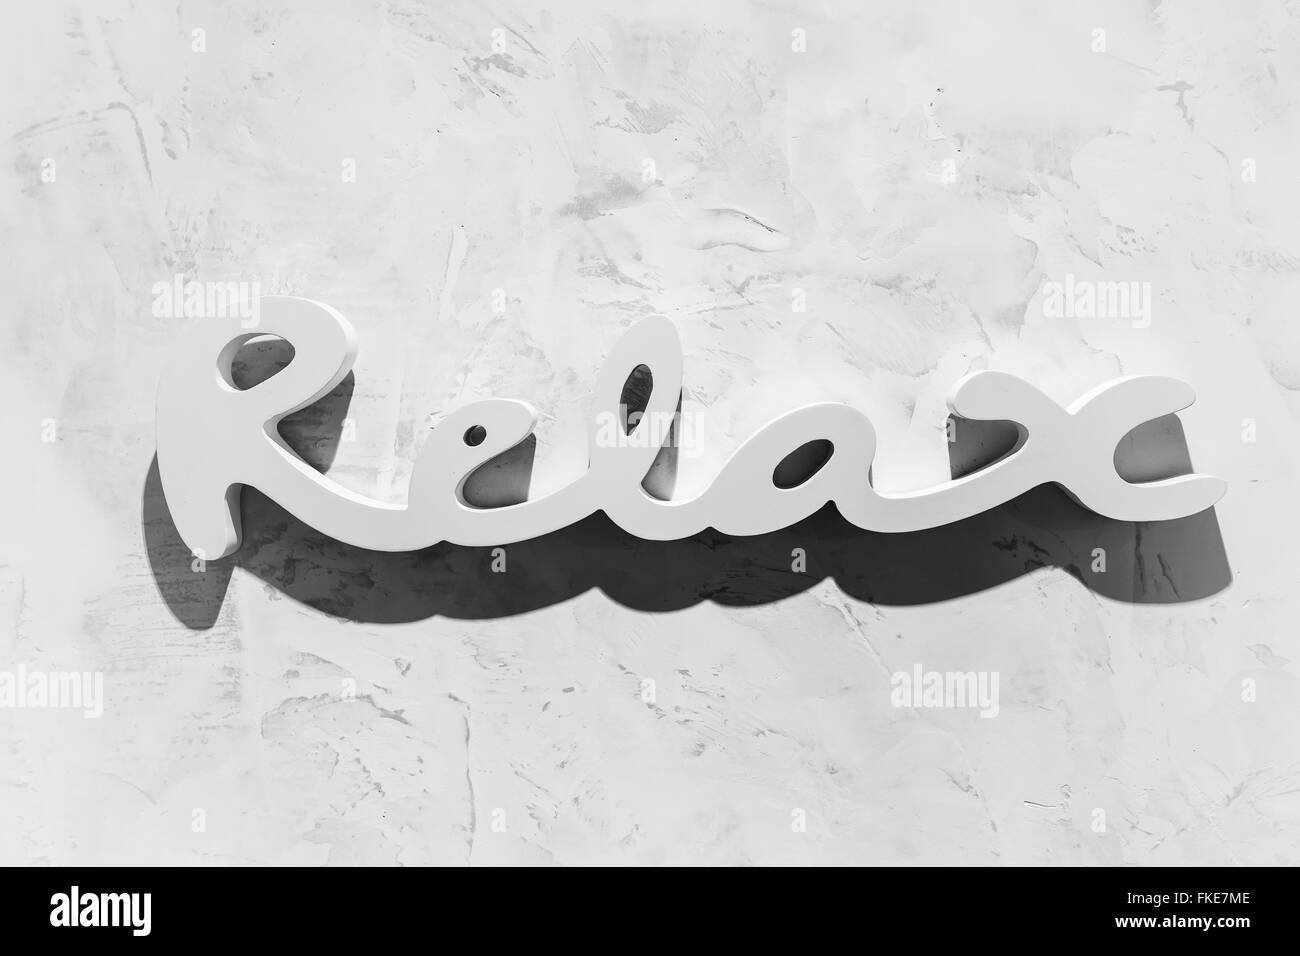 La palabra 'relax' escrito en tipografía de madera. Foto de stock